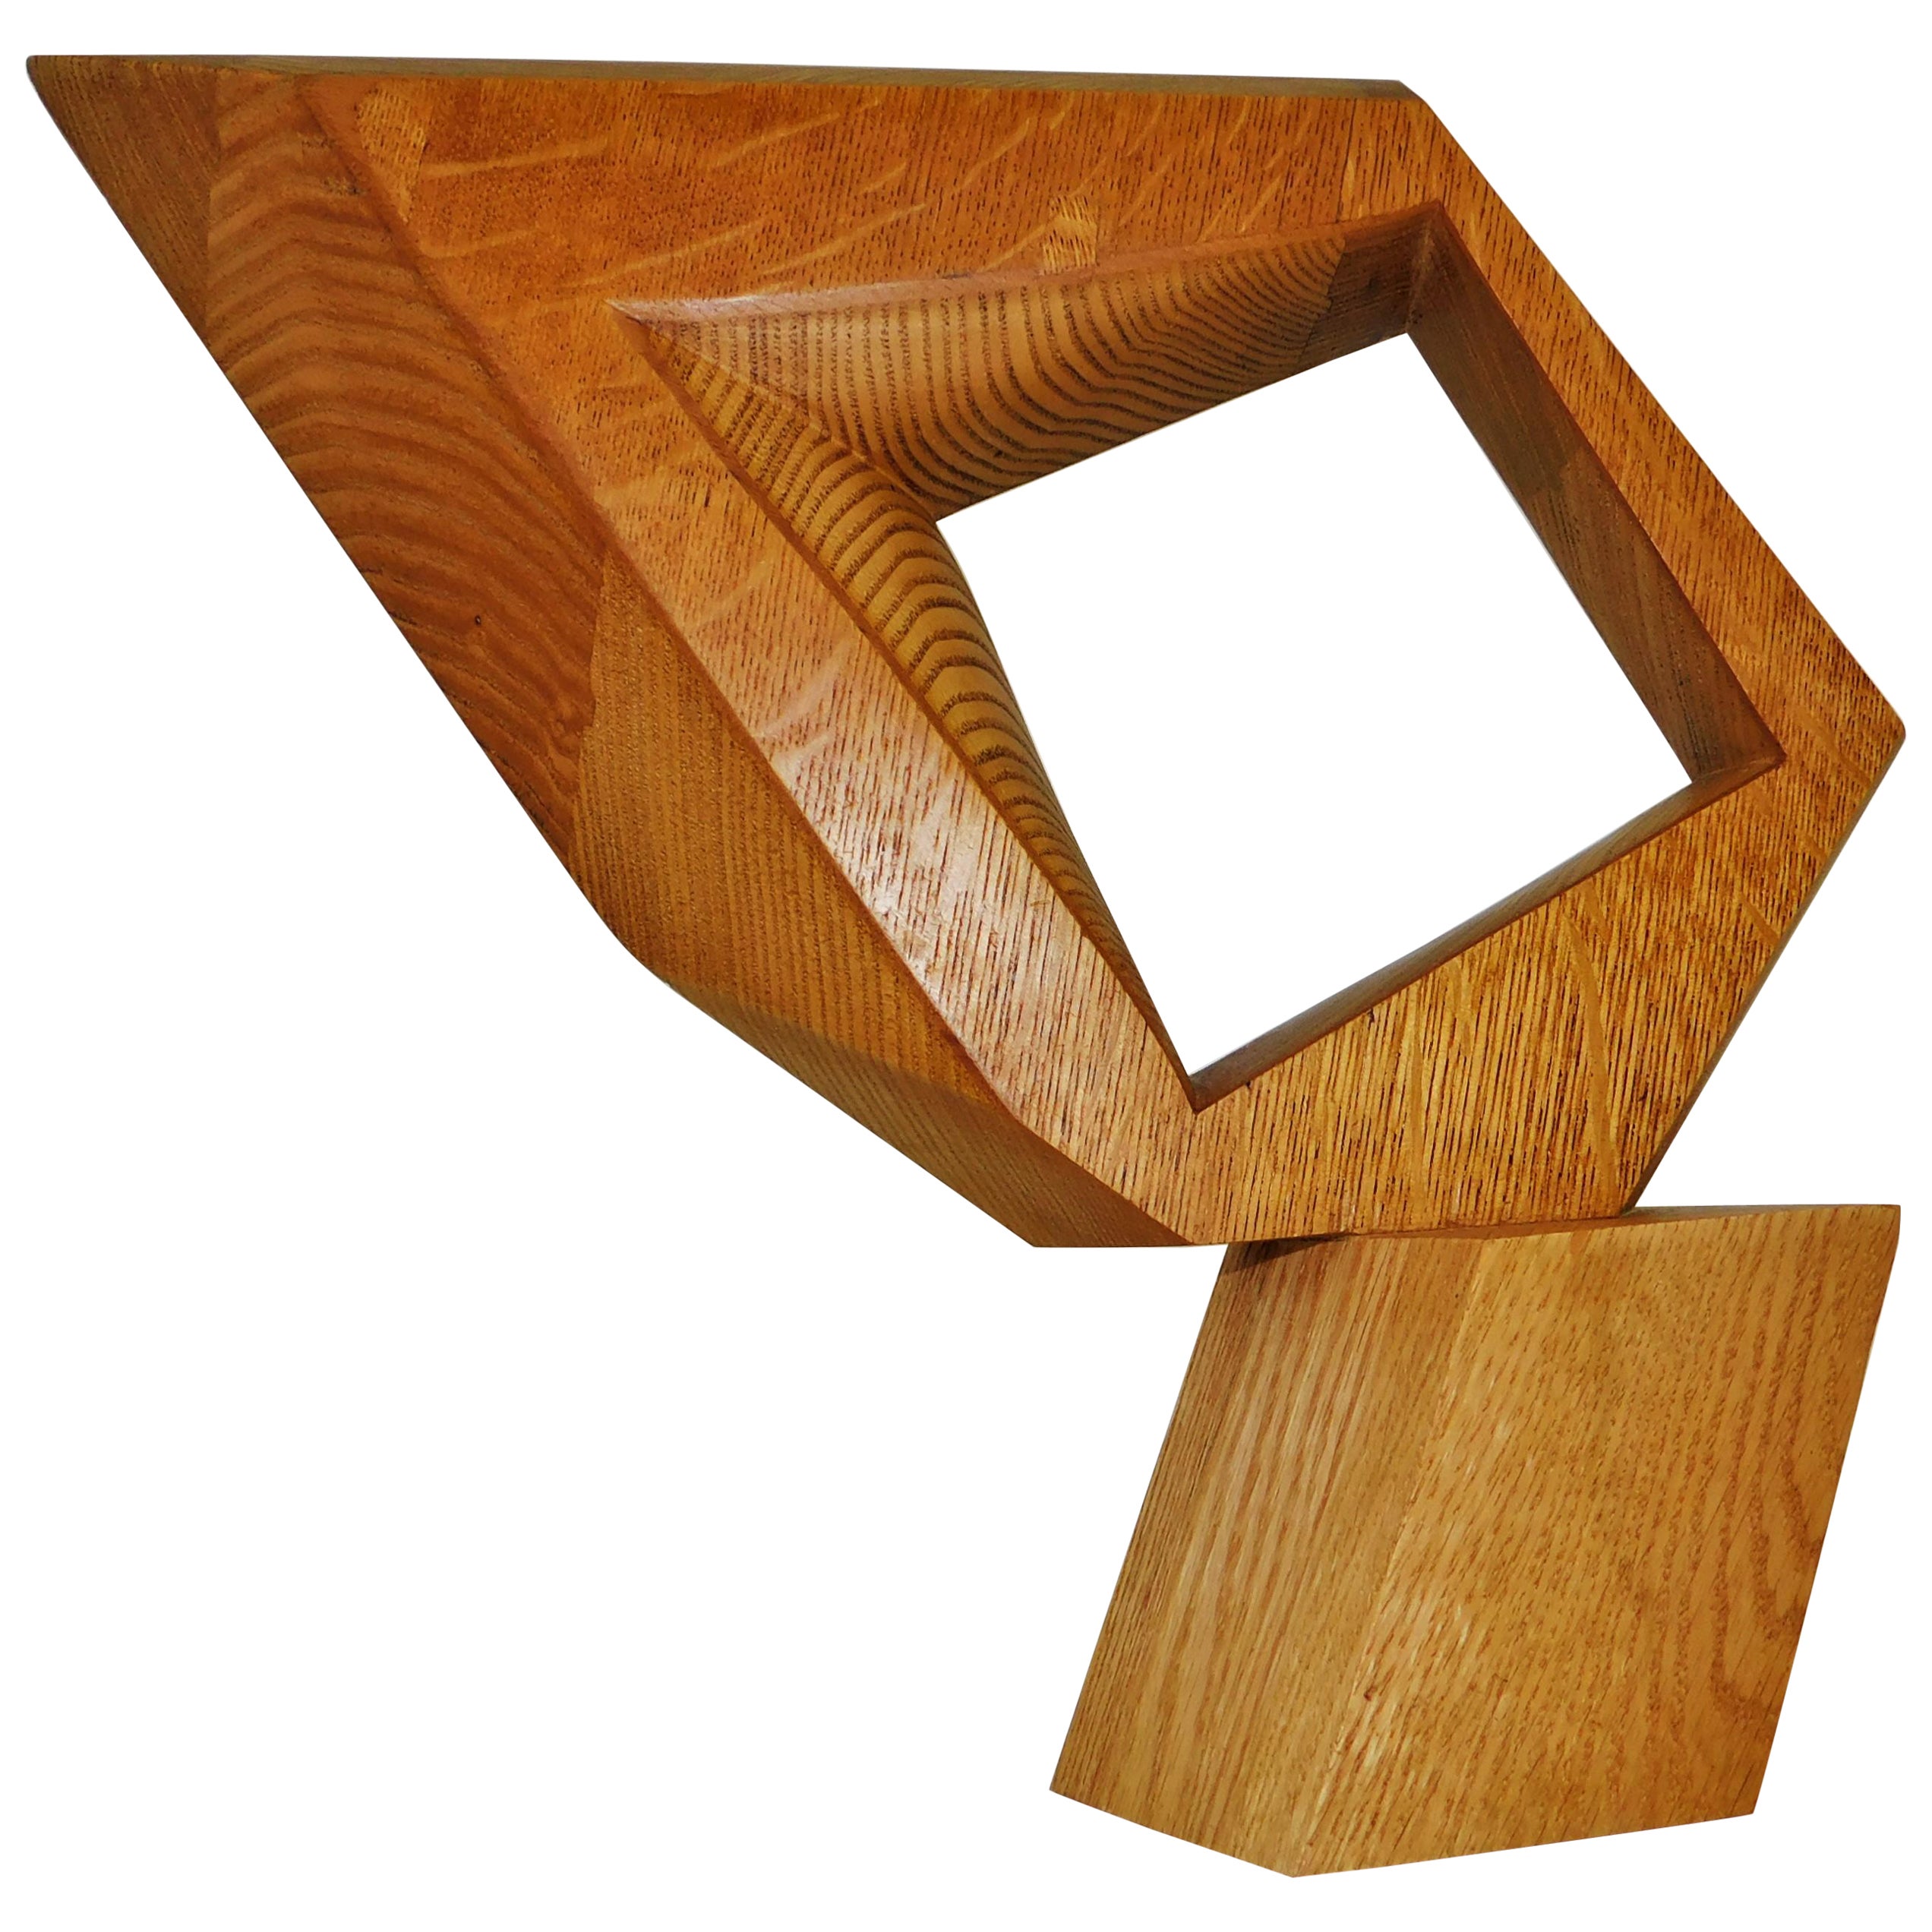 Sculpture en bois de chêne de style constructiviste abstrait moderne signée